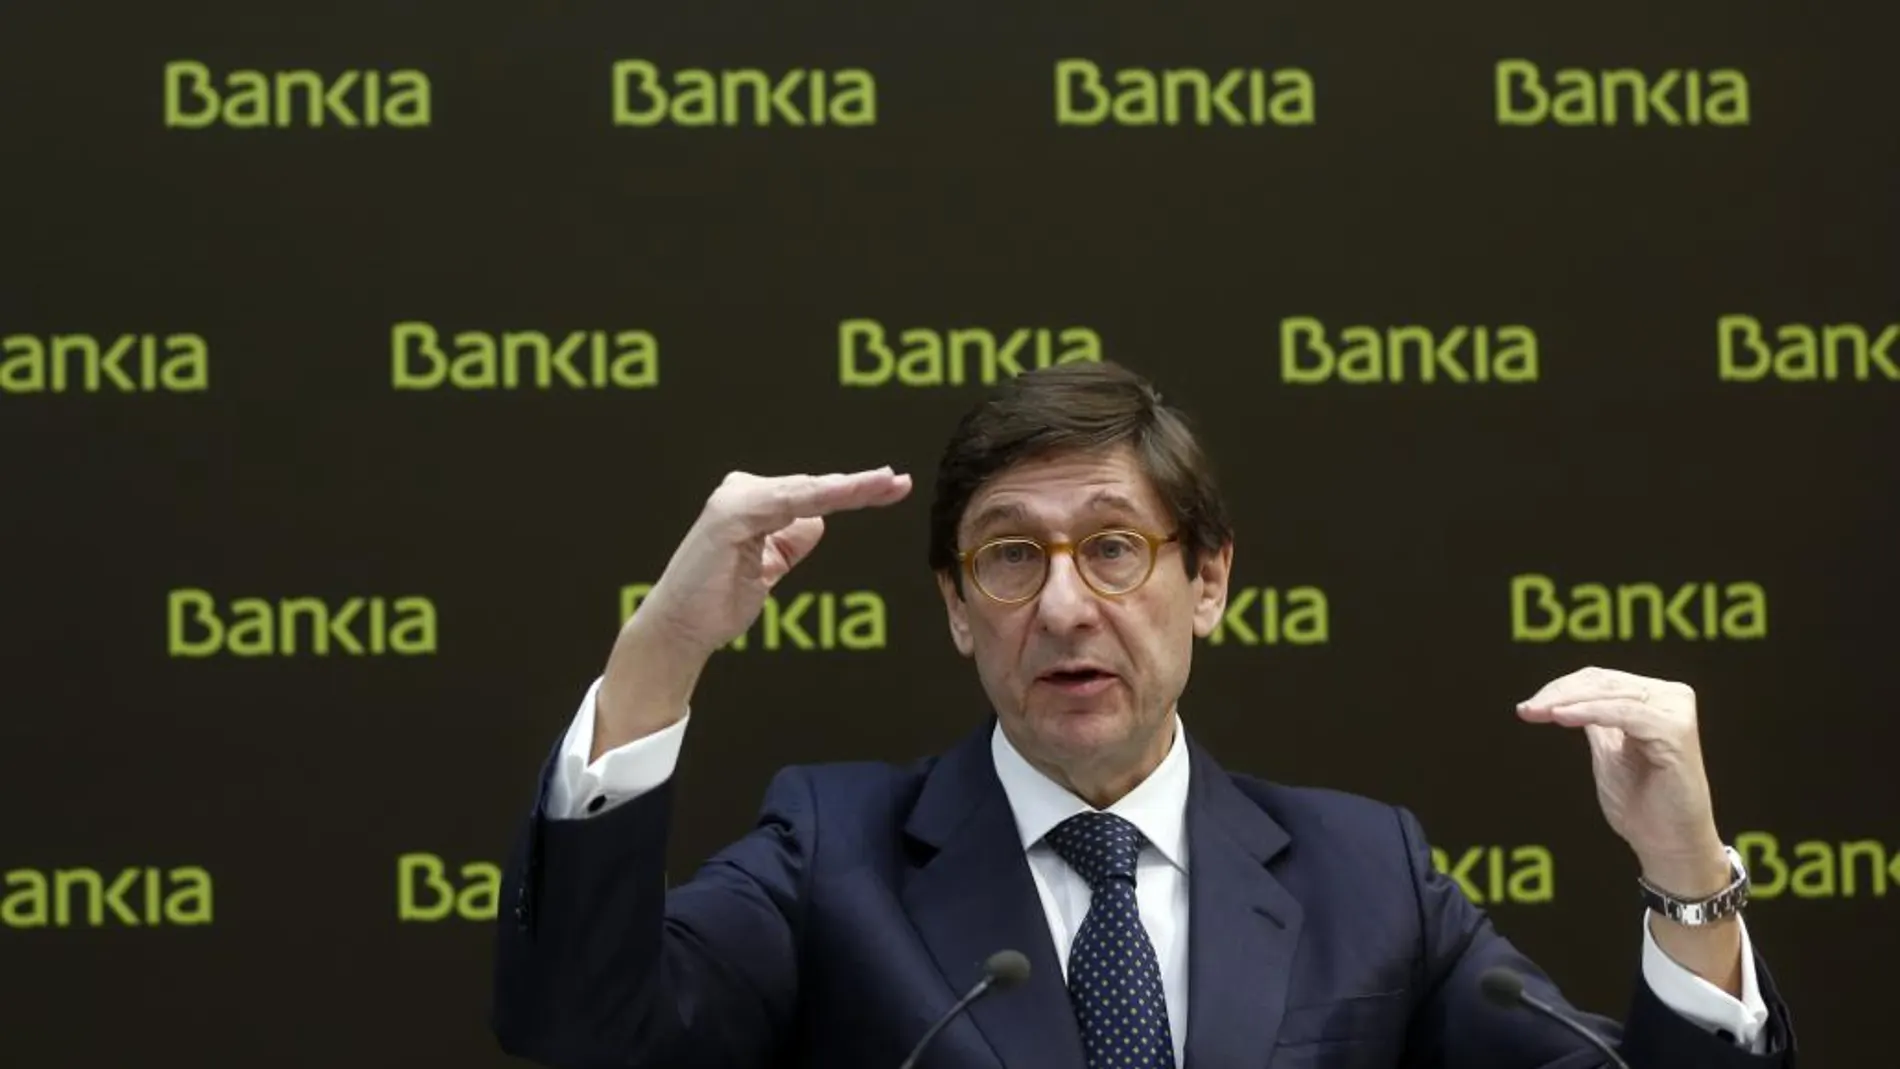 Jose Ignacio Goirigolzarri, preside Bankia